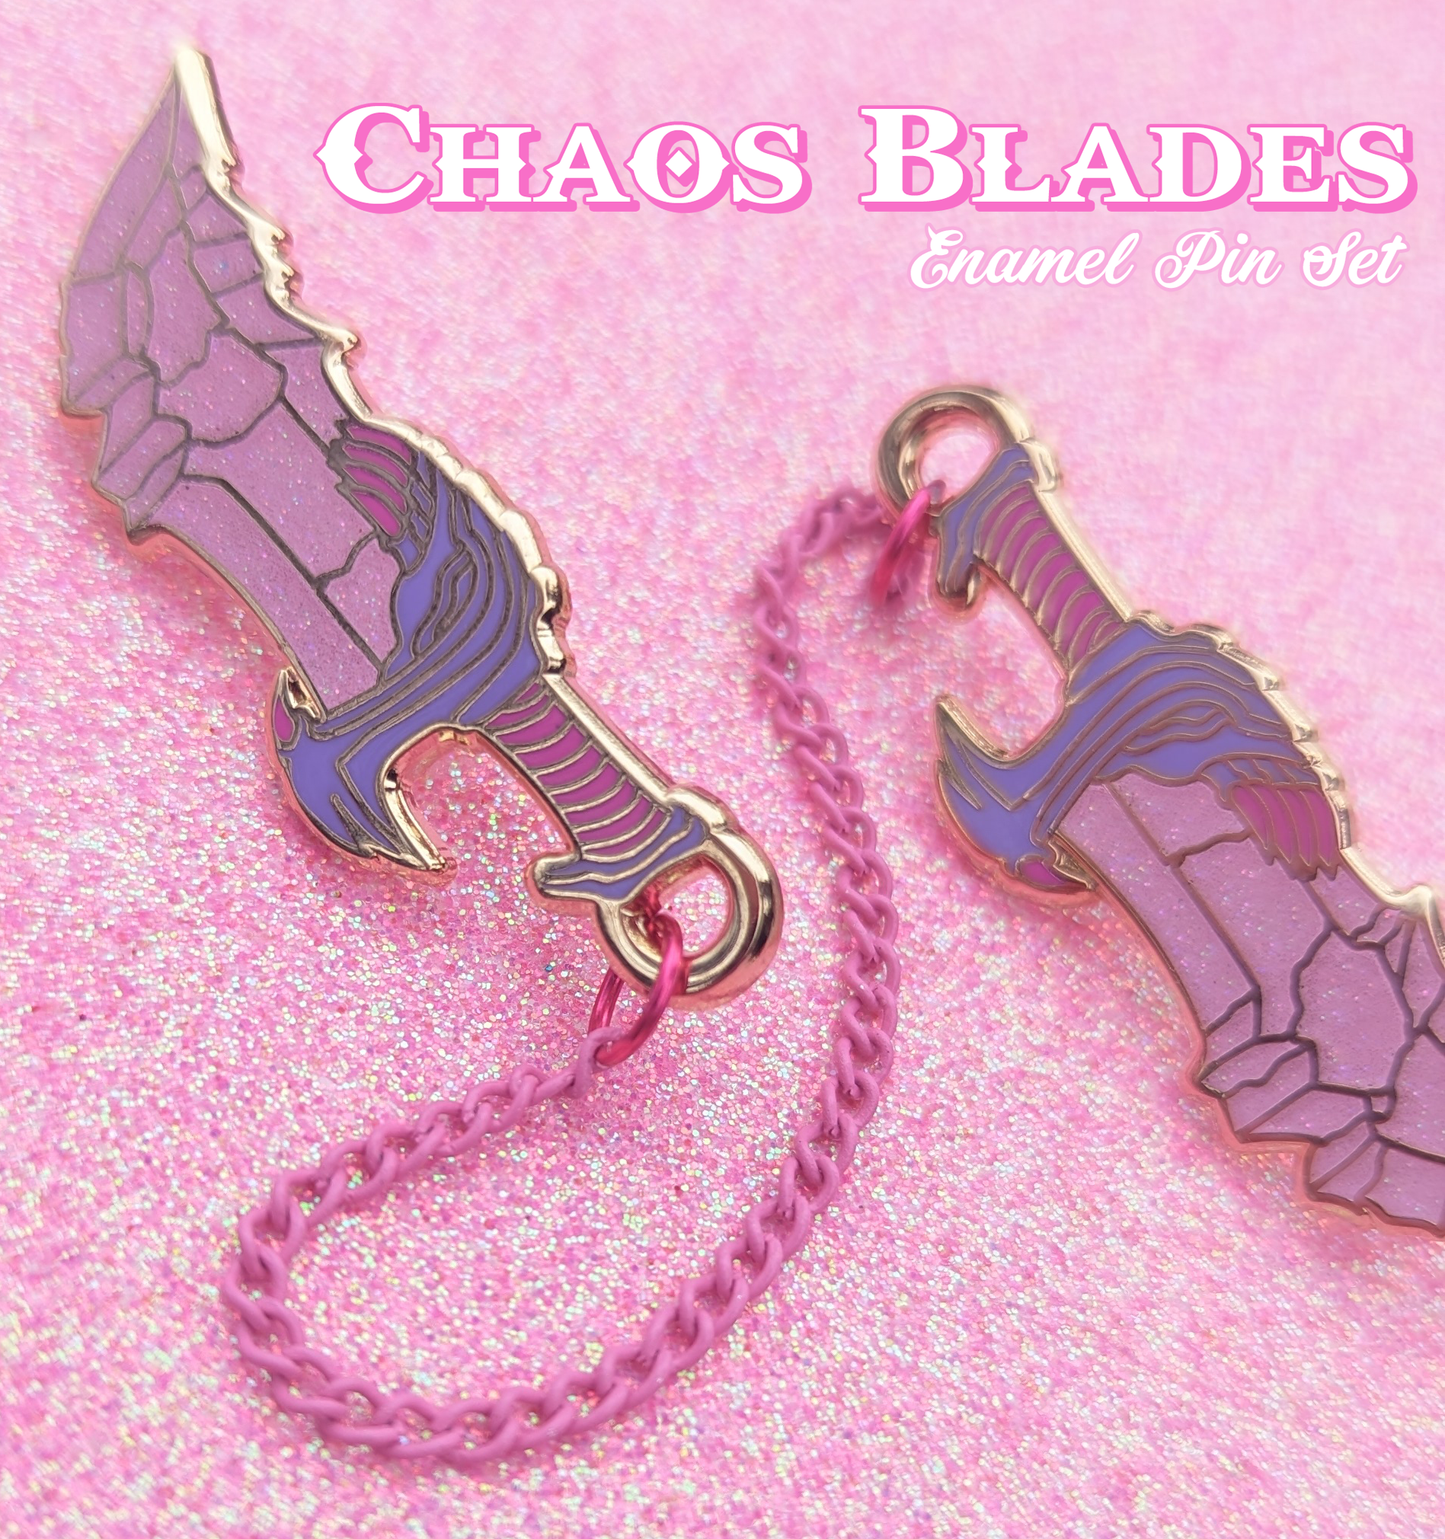 Chaos Blades Enamel Pin Set